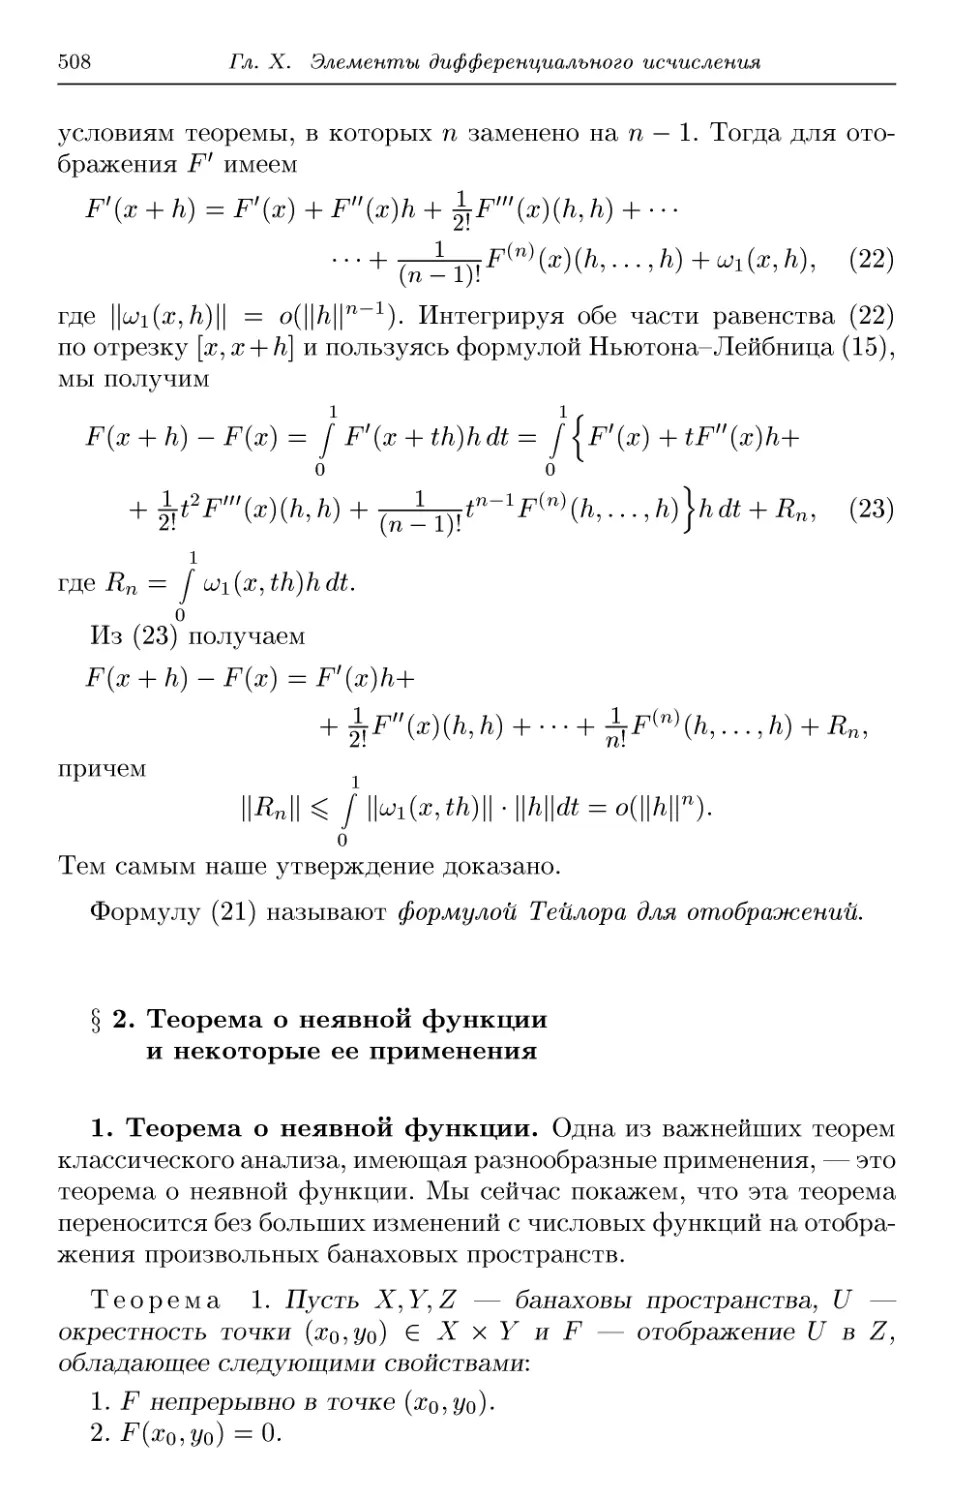 § 2. Теорема о неявной функции и некоторые ее применения